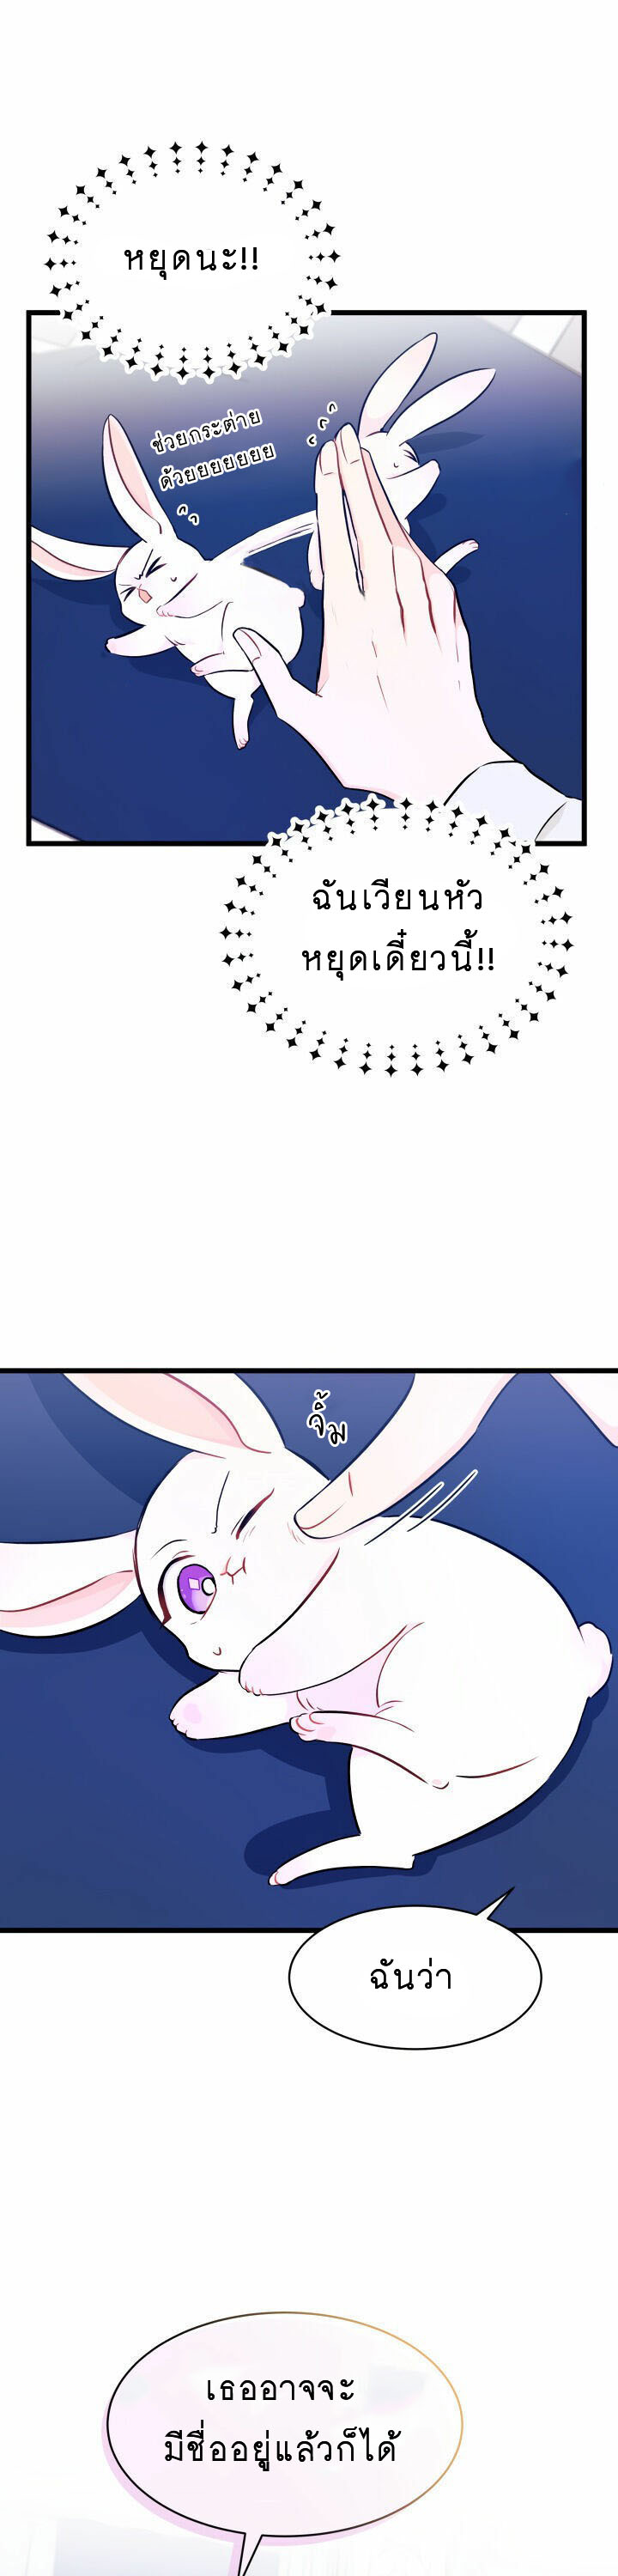 rabbit10 17